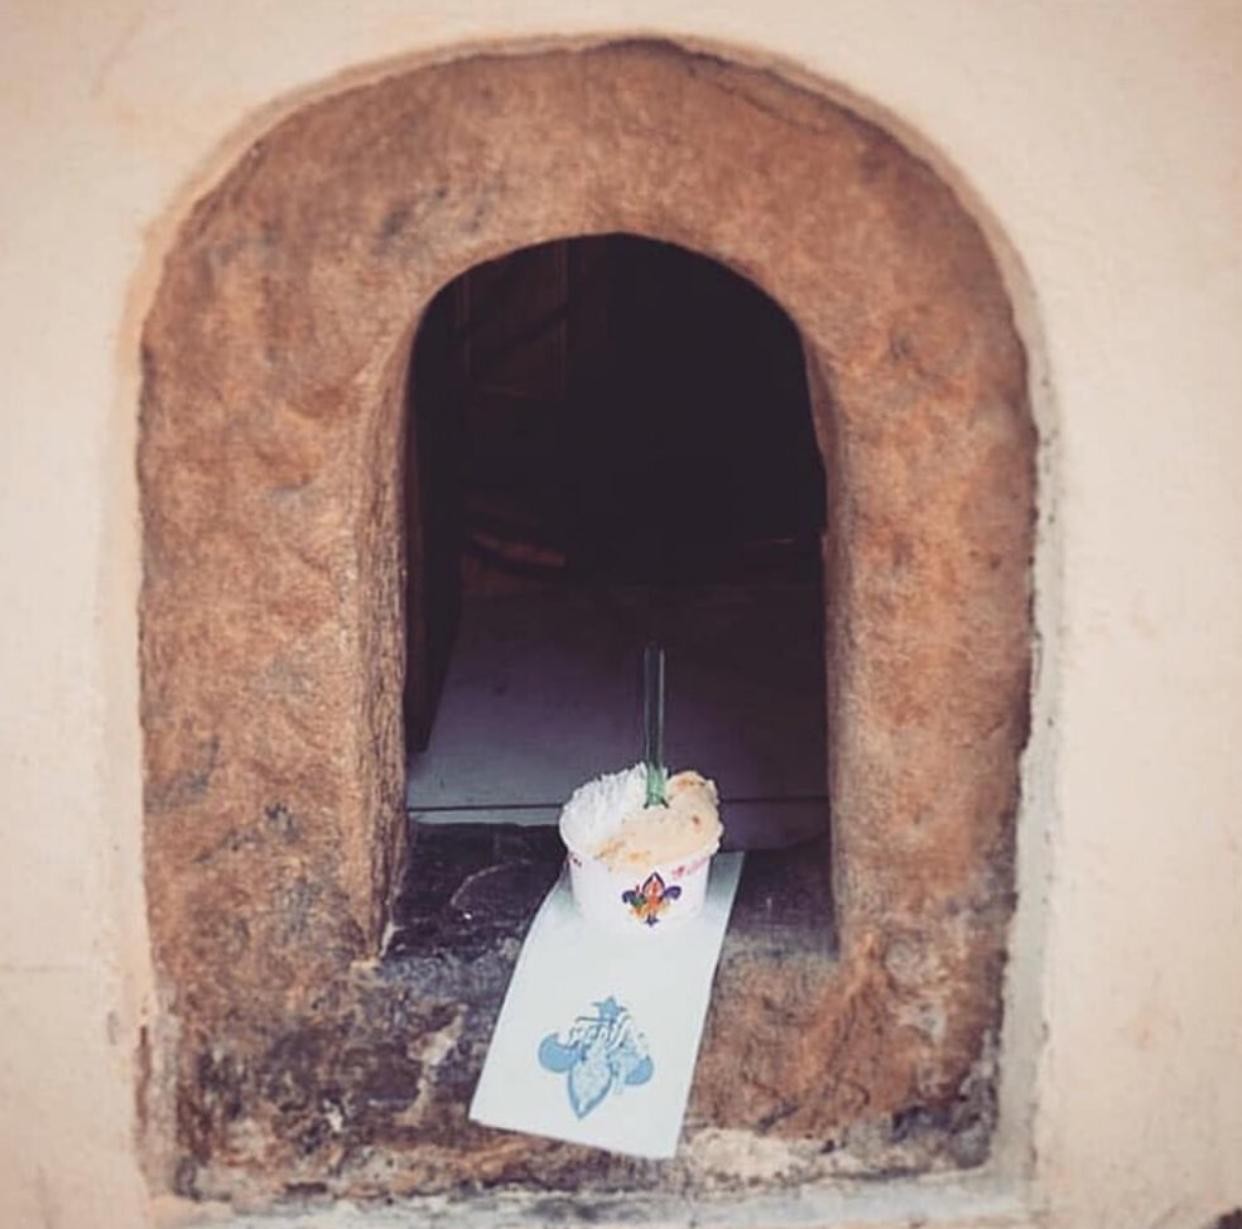 Portinhas medievais estão sendo usadas novamente, revivendo uma tradição Italiana da época da peste  (Foto: Reprodução/Instagram)